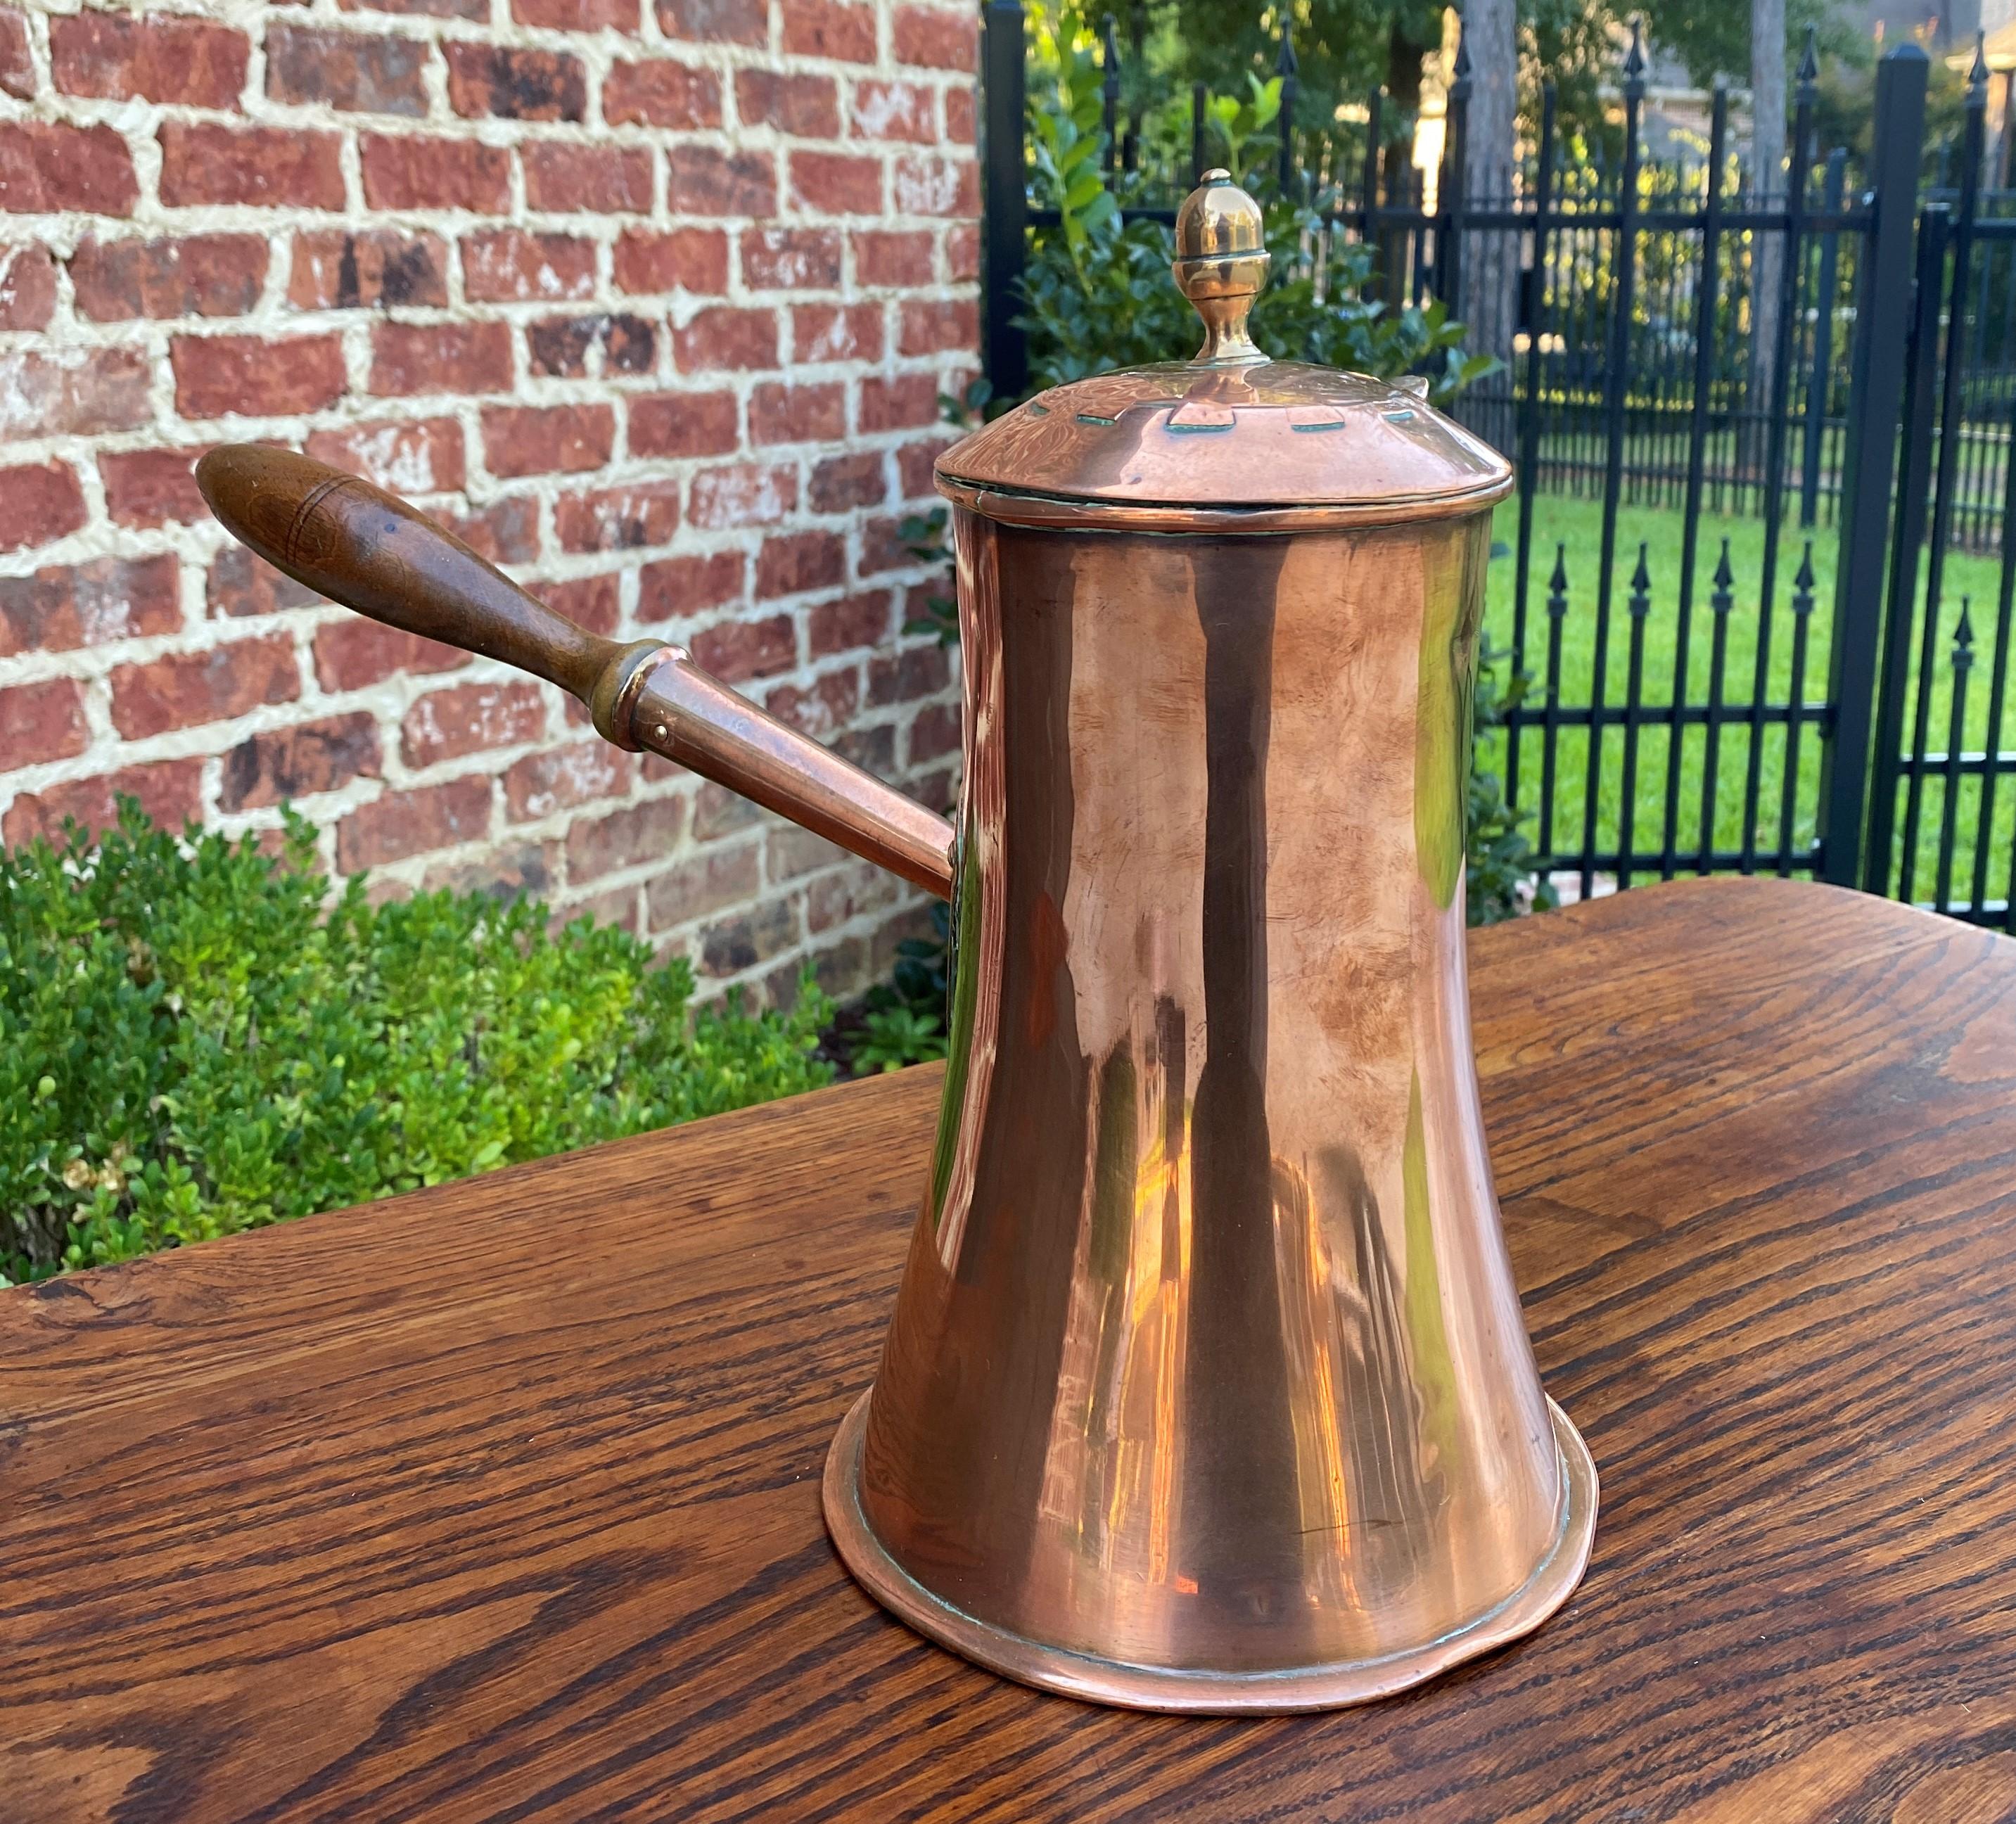 Antique English Copper Tea Kettle Pitcher Hand Seamed Wood Handle Pour Spout 2